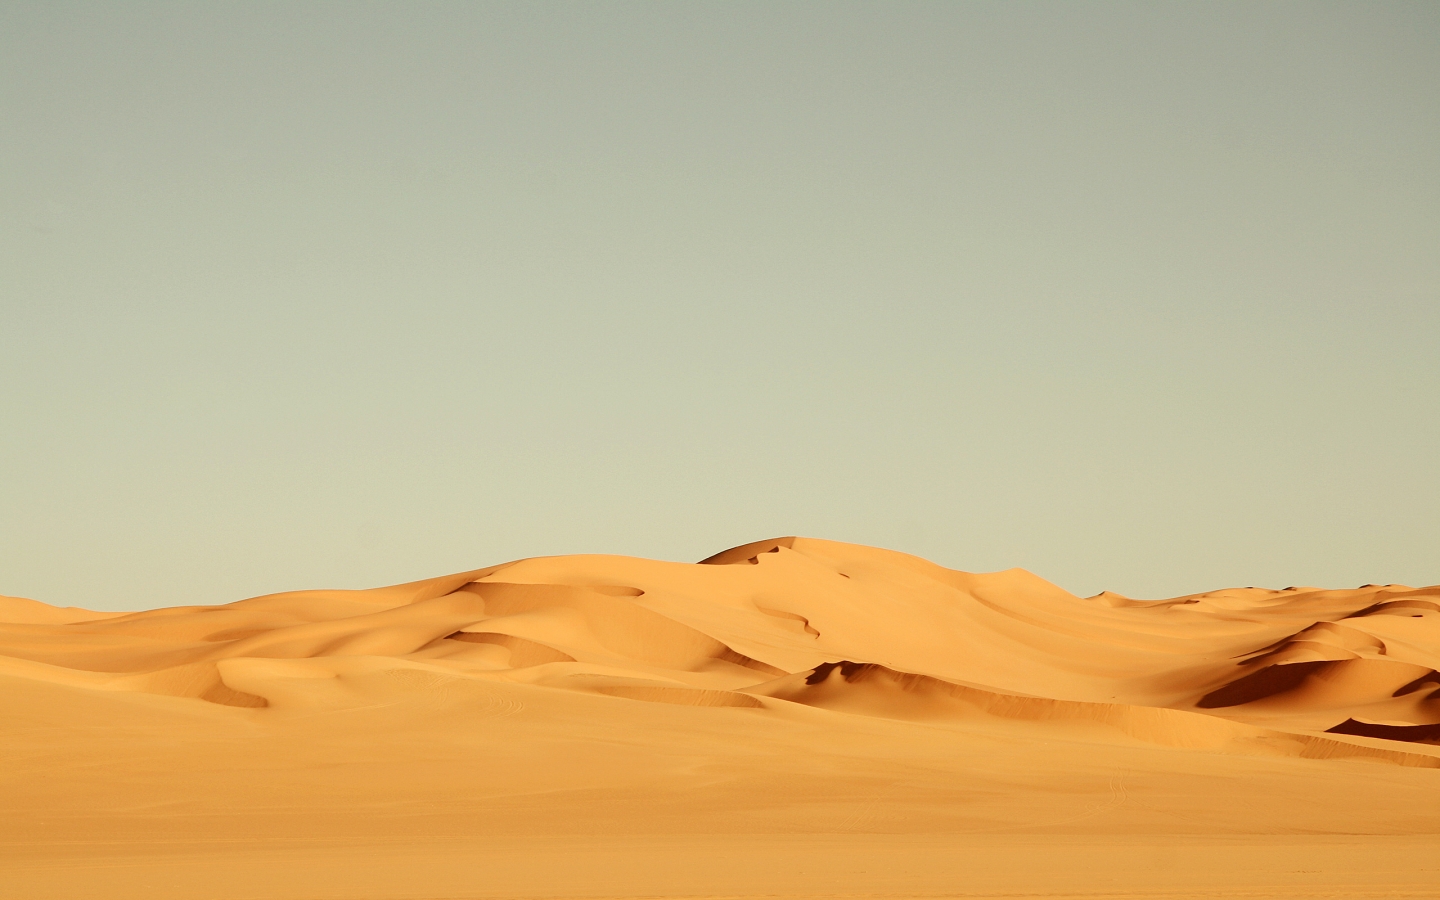 Sahara Desert for 1440 x 900 widescreen resolution